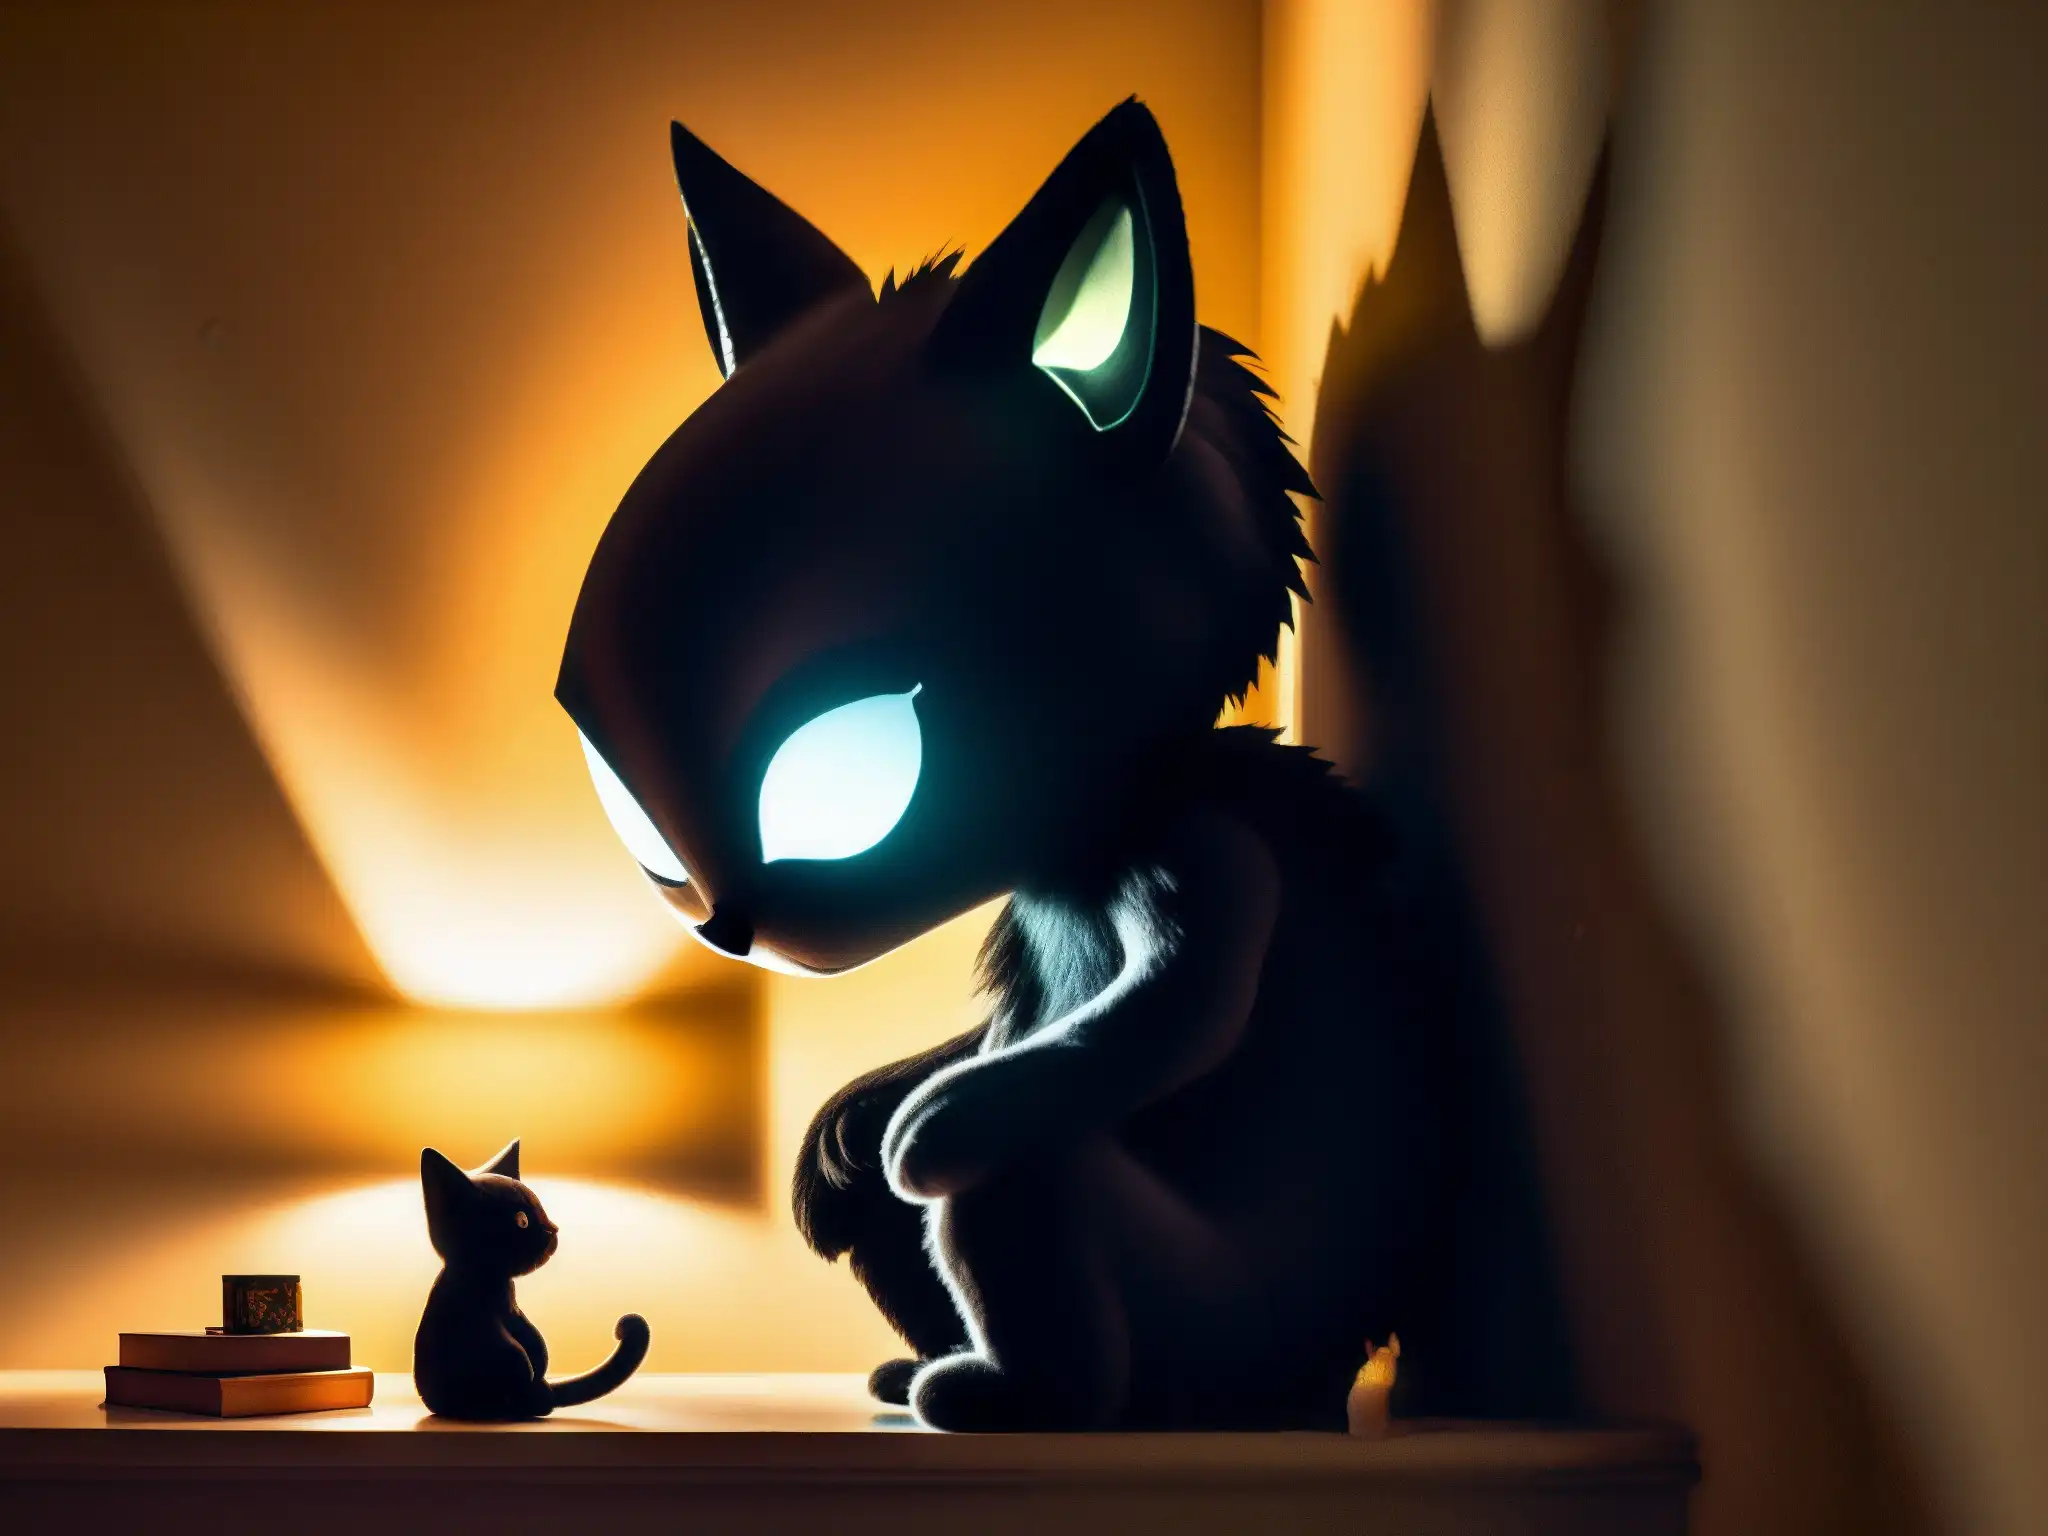 Un niño asustado en su habitación a oscuras abraza su peluche, mientras una sombra aterradora se asoma debajo de la cama